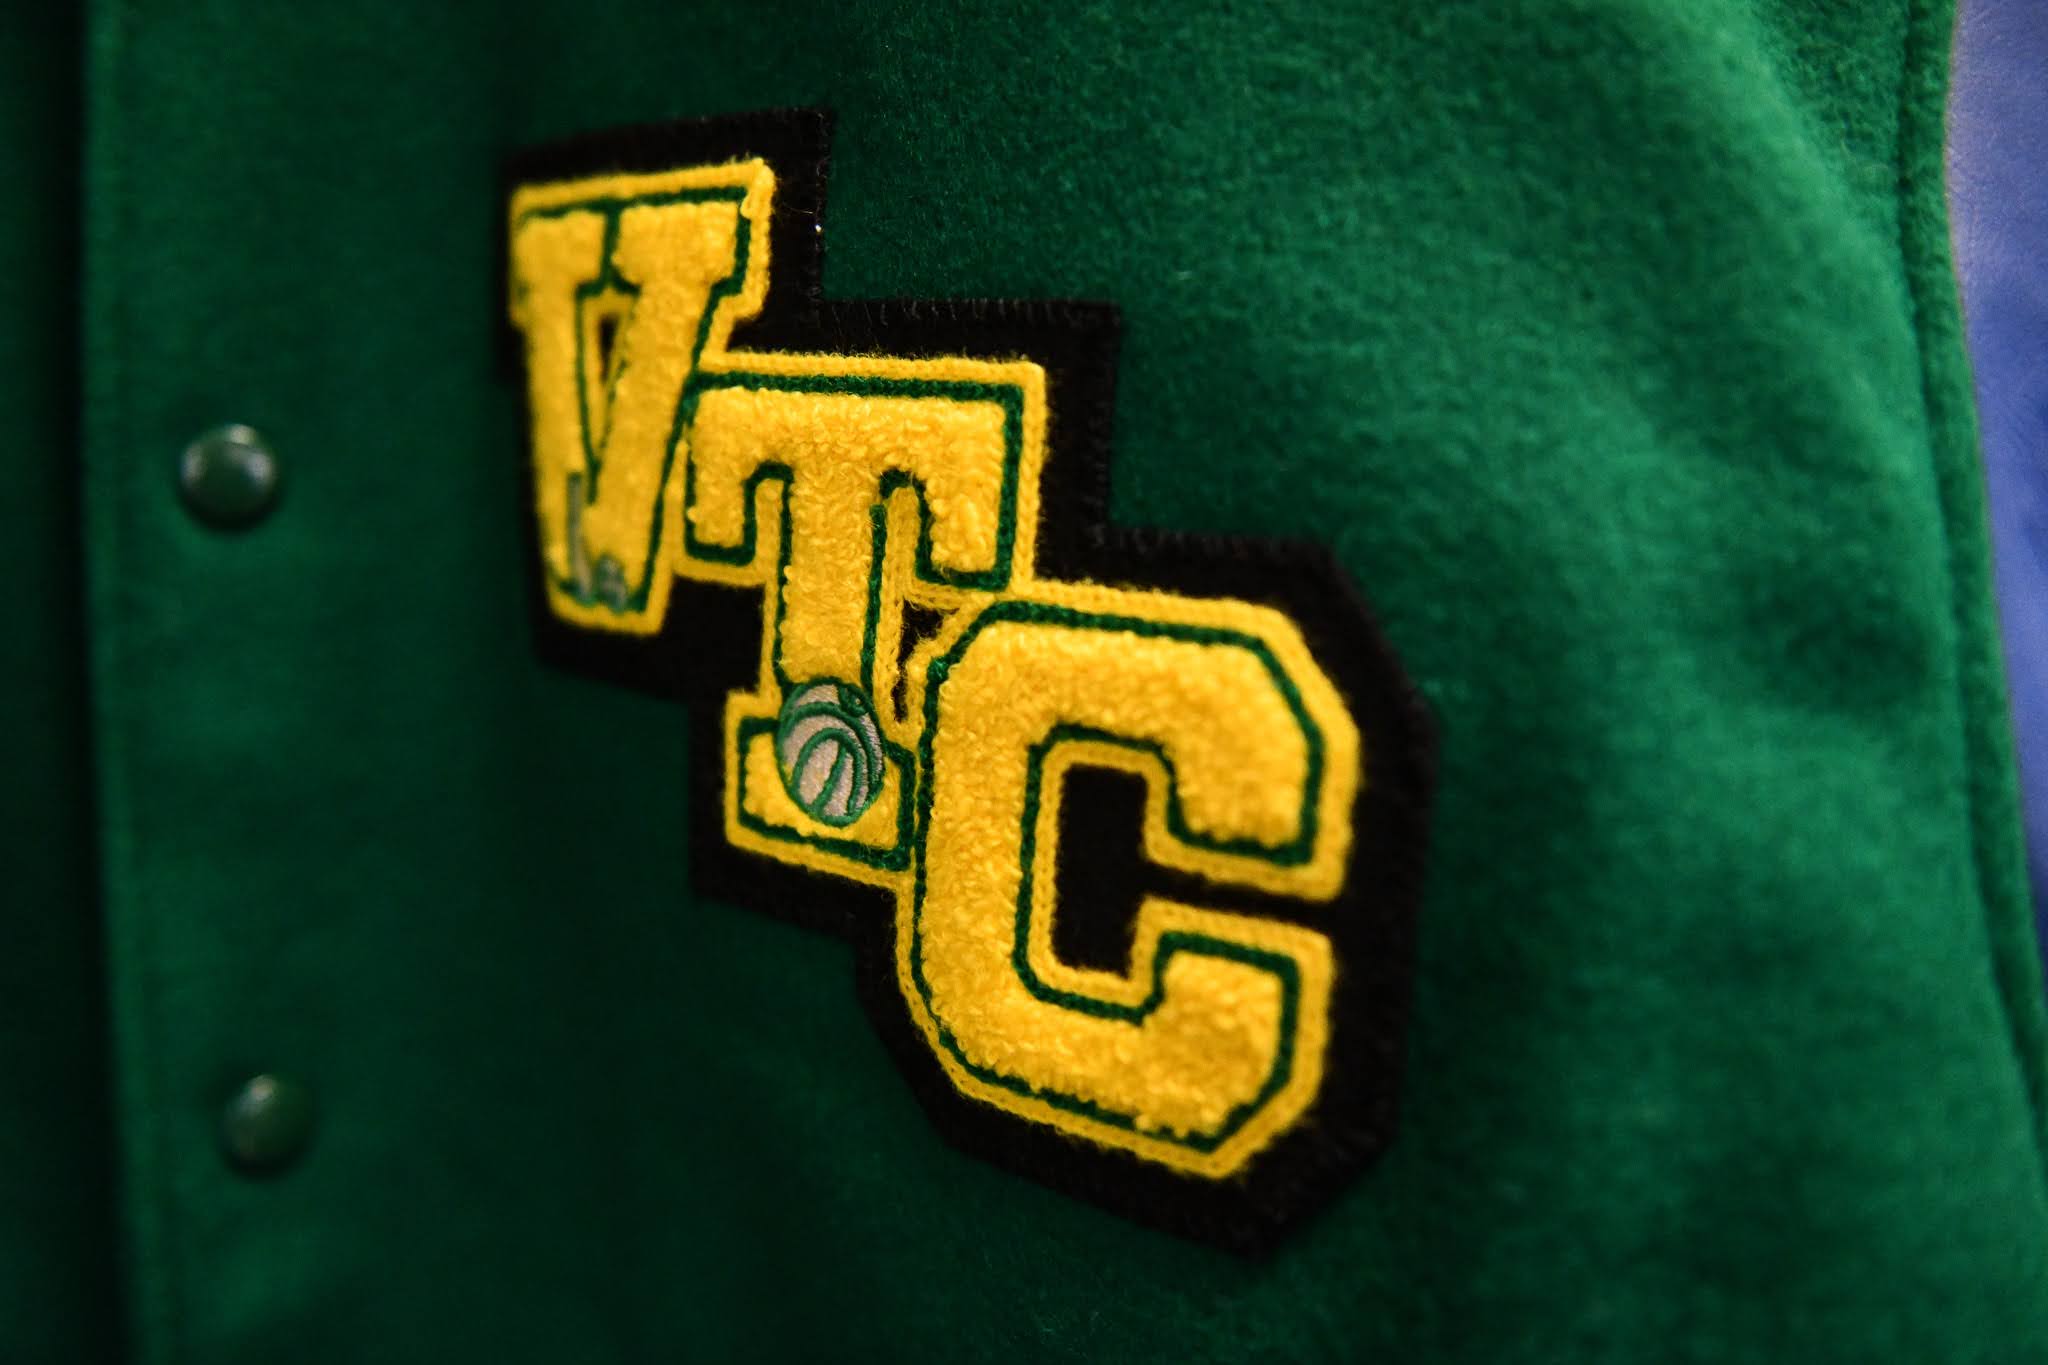 VTC Letter jacket